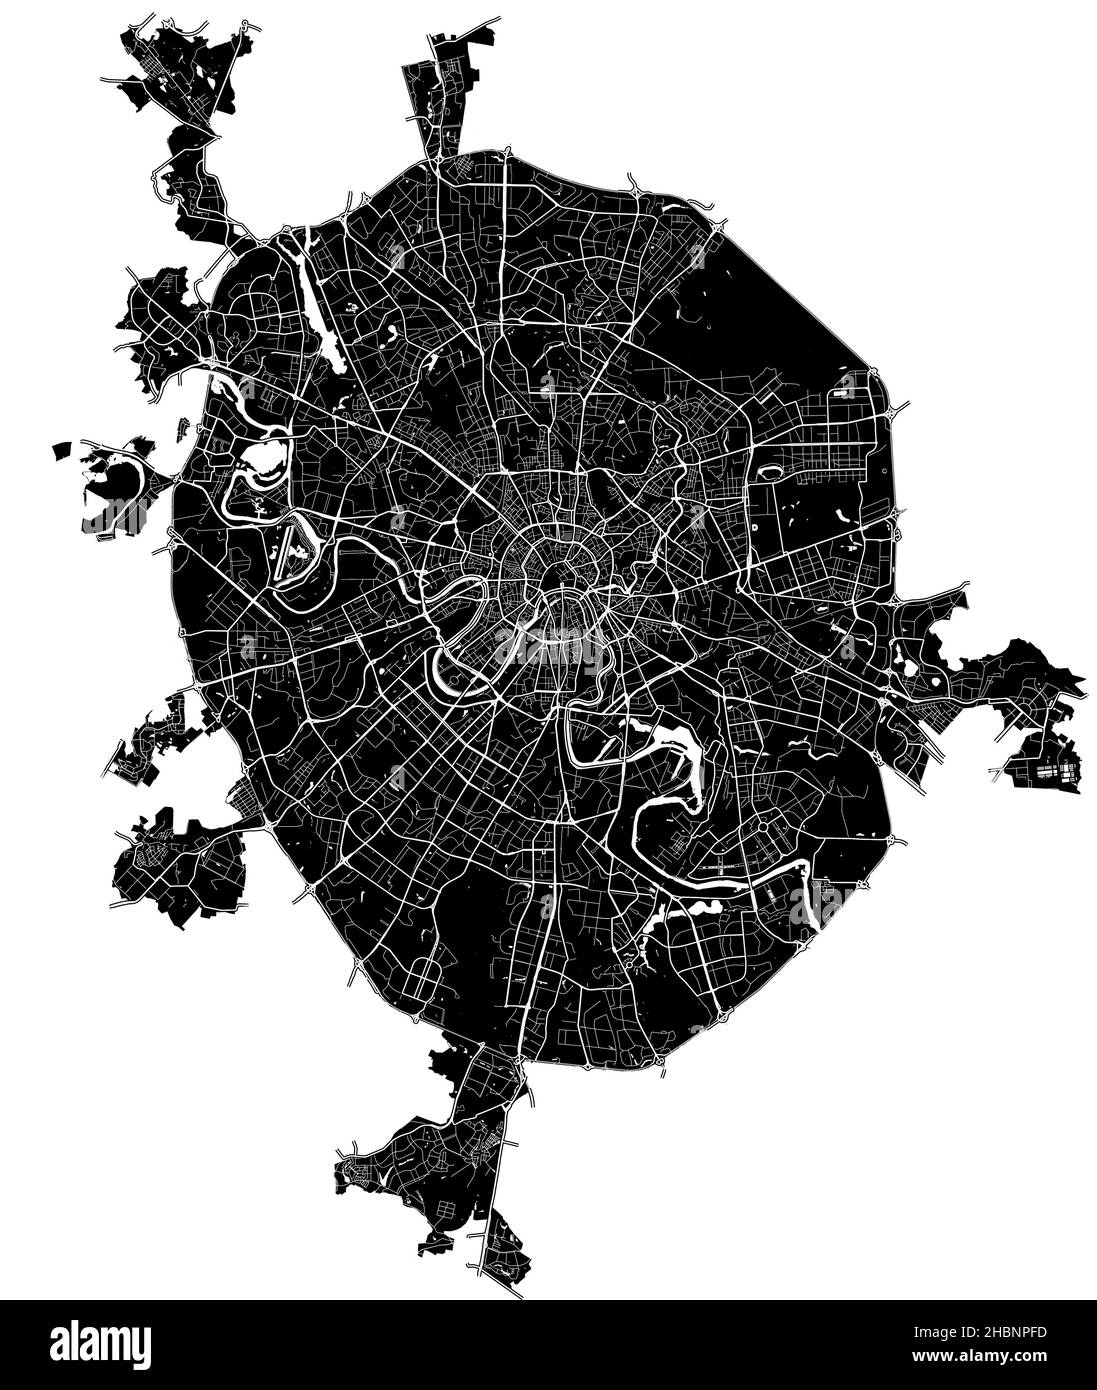 Moskau, Russland, hochauflösende Vektorkarte mit Stadtgrenzen und bearbeitbaren Pfaden. Der Stadtplan wurde mit weißen Flächen und Linien für Hauptstraßen gezeichnet, Stock Vektor